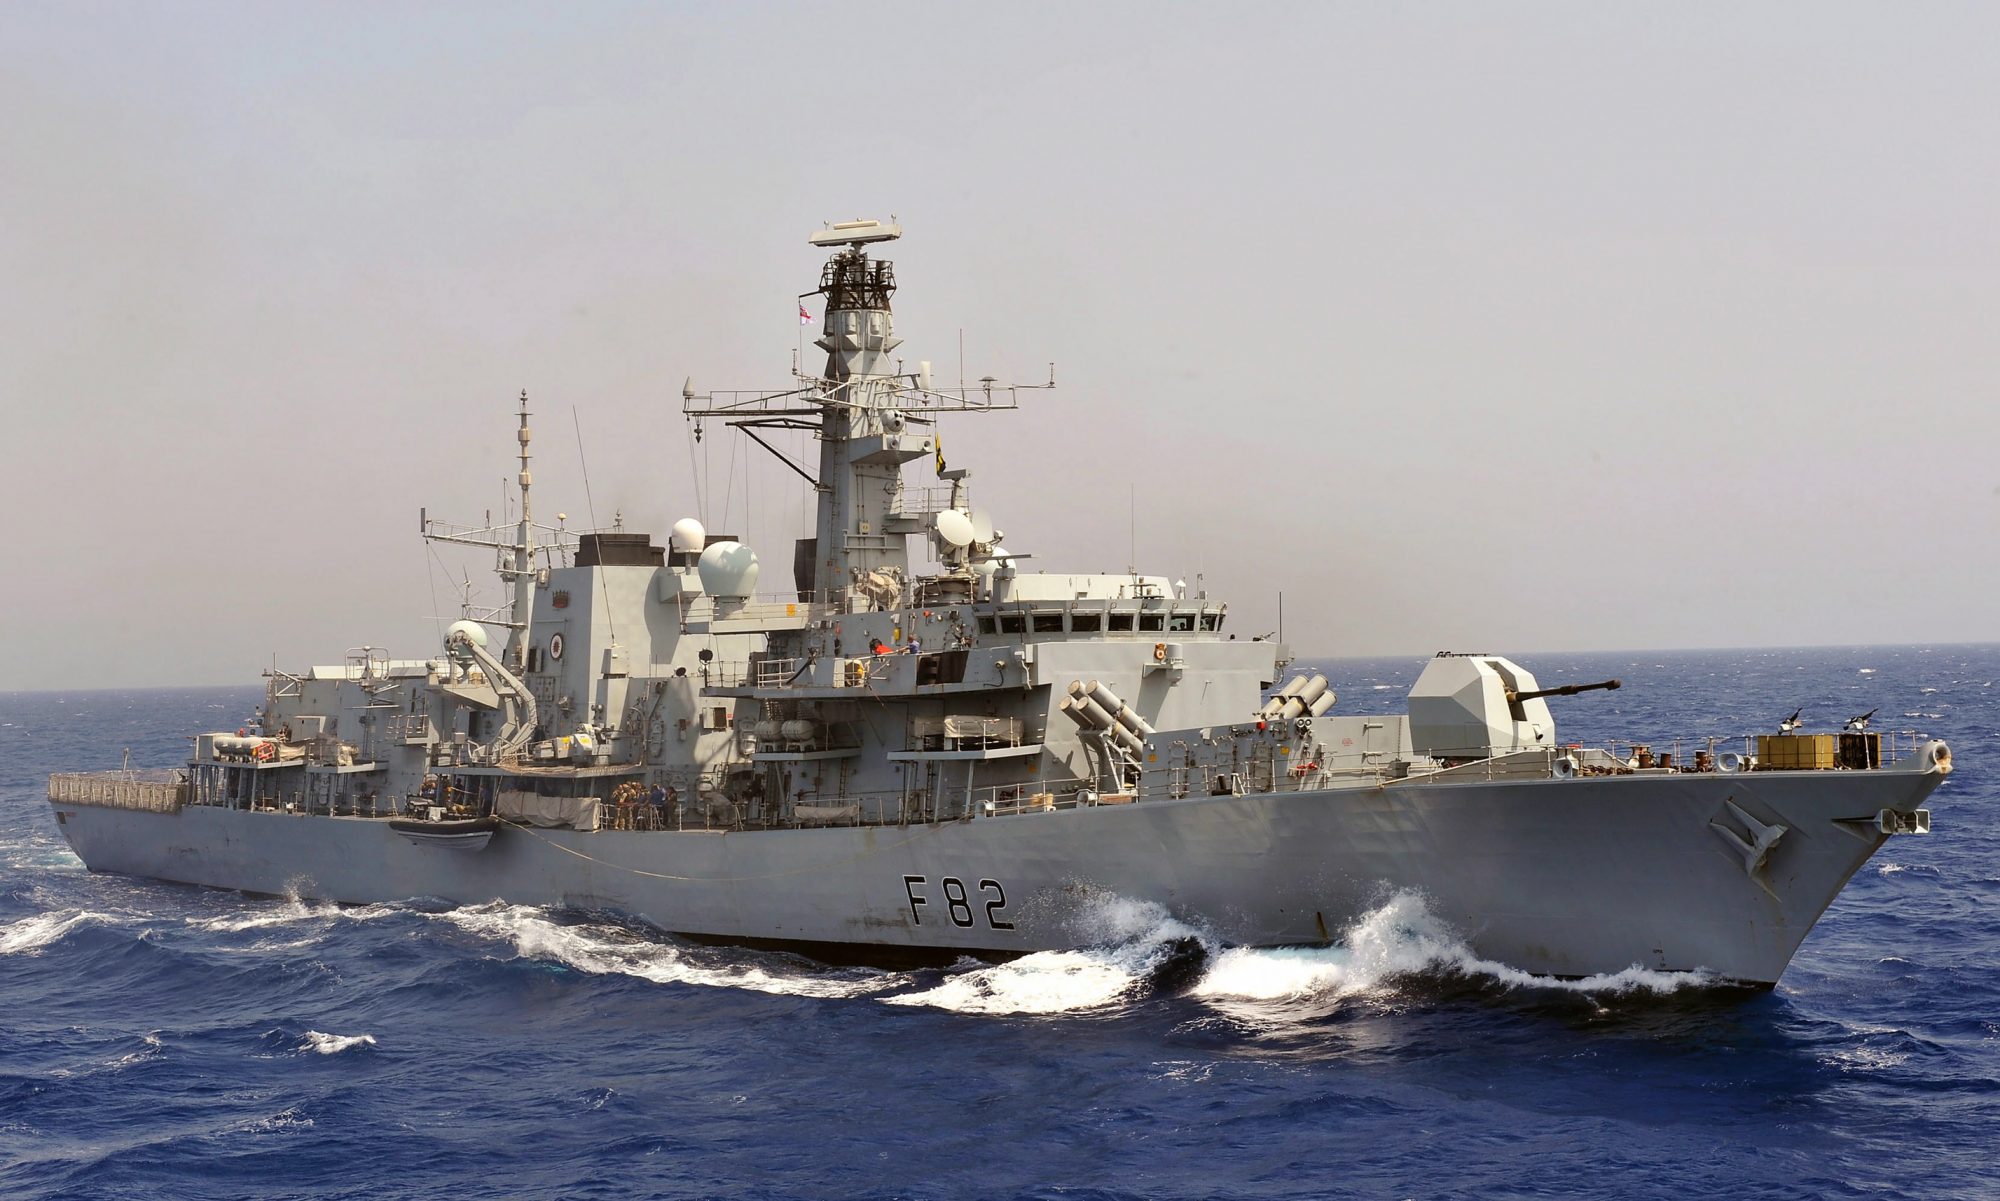 HMS Somerset, fragata Type 23